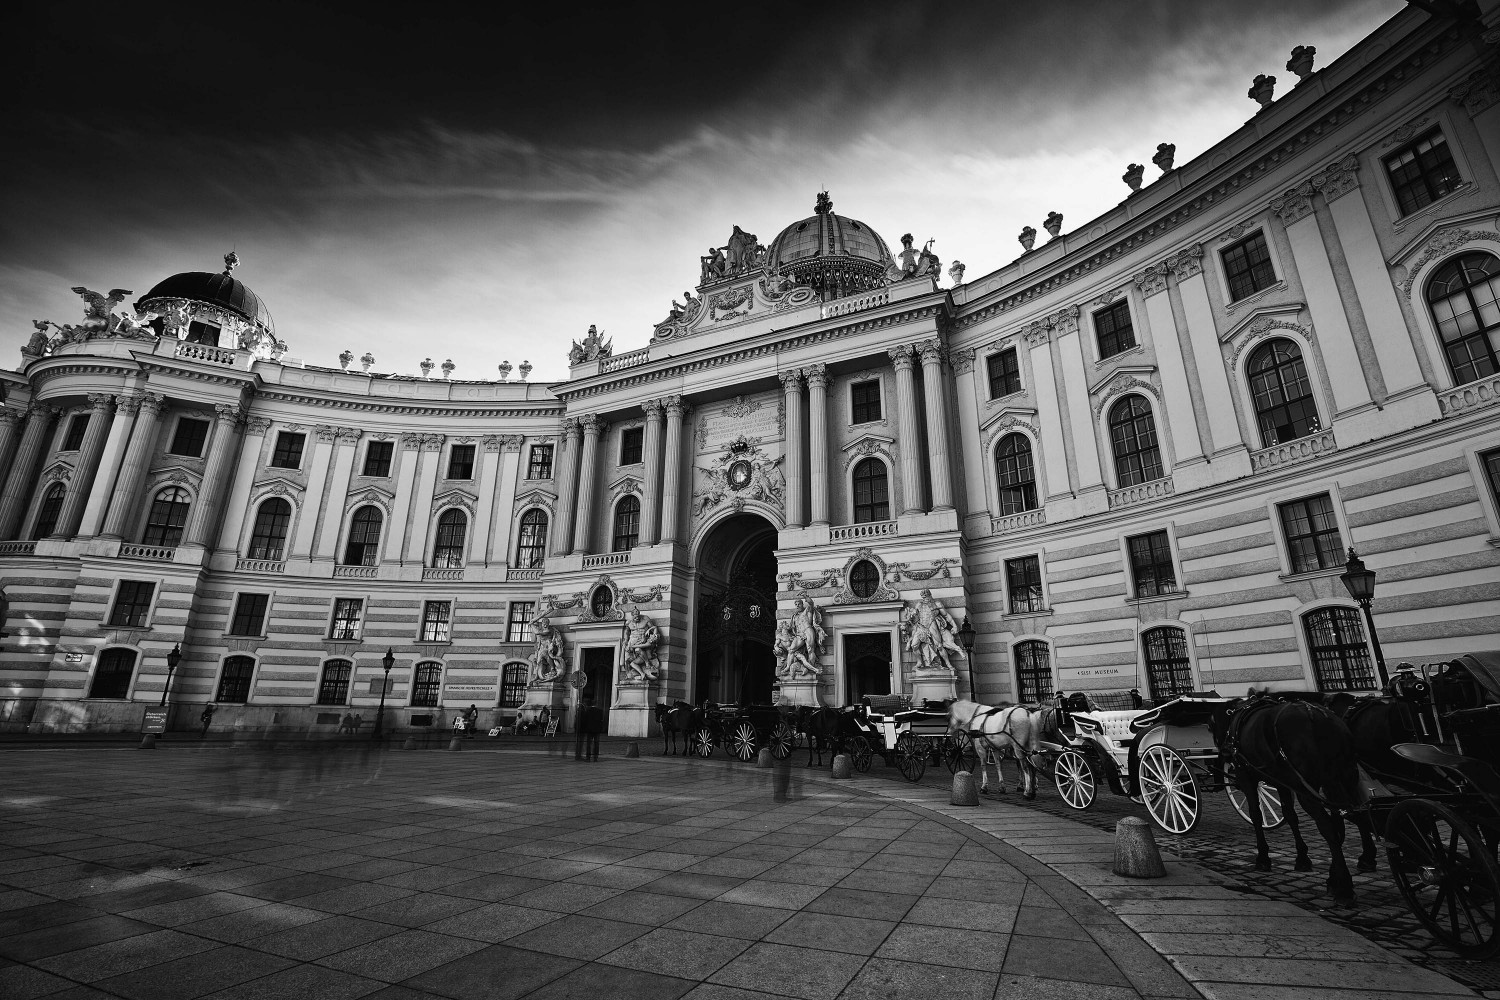 Spanische Hofreitschule in Wien - Langzeitbelichtung in Schwarz-Weiß